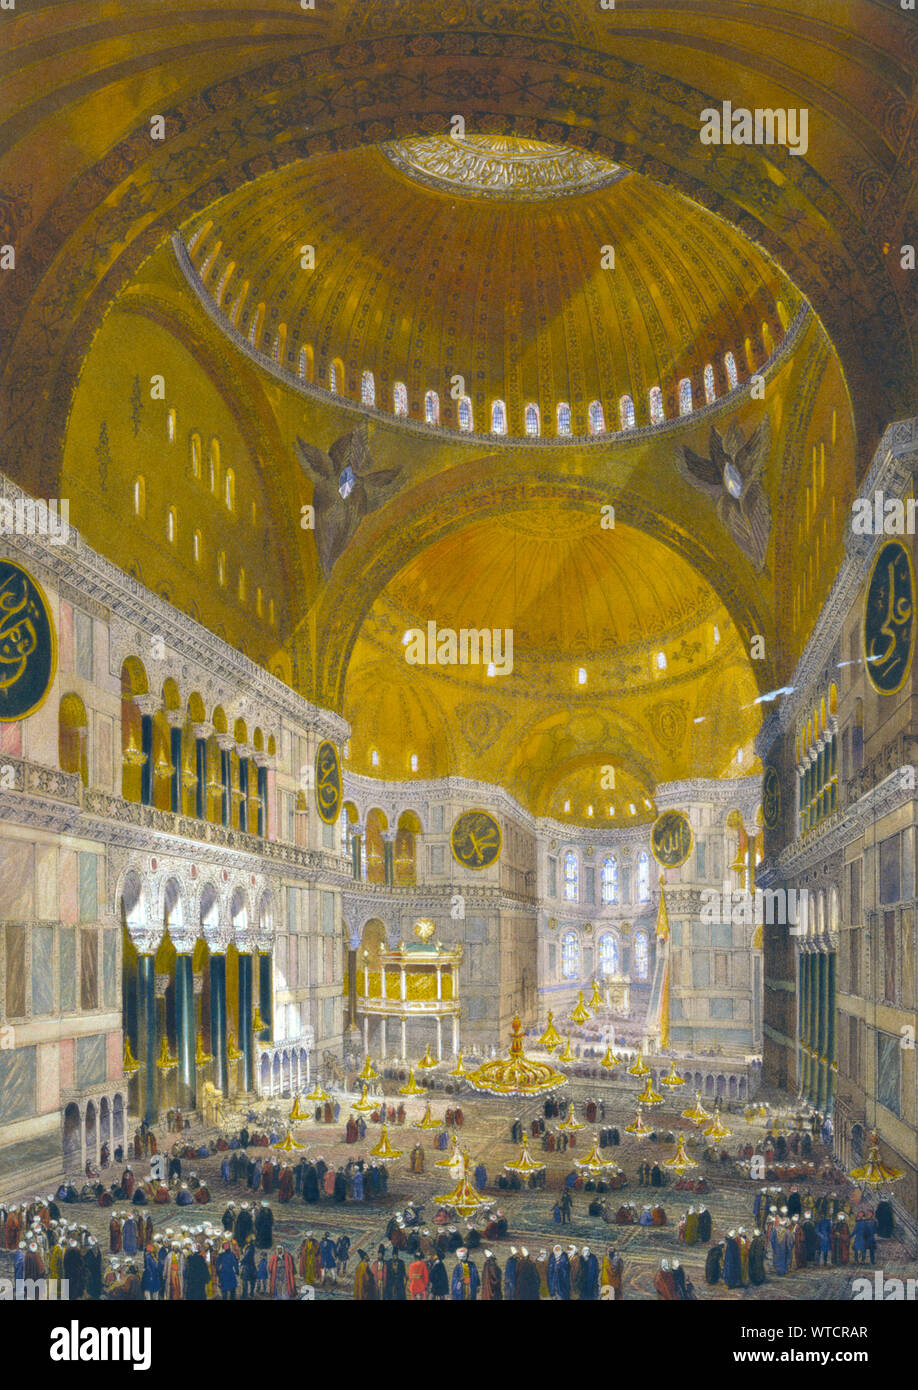 Schiff der Ayasofya Moschee, die früher die Kirche Hagia Sophia, mit Blick nach Osten; mit Gruppen von Männern in traditioneller Kleidung. Türkei (Osmanisches Reich). Stockfoto